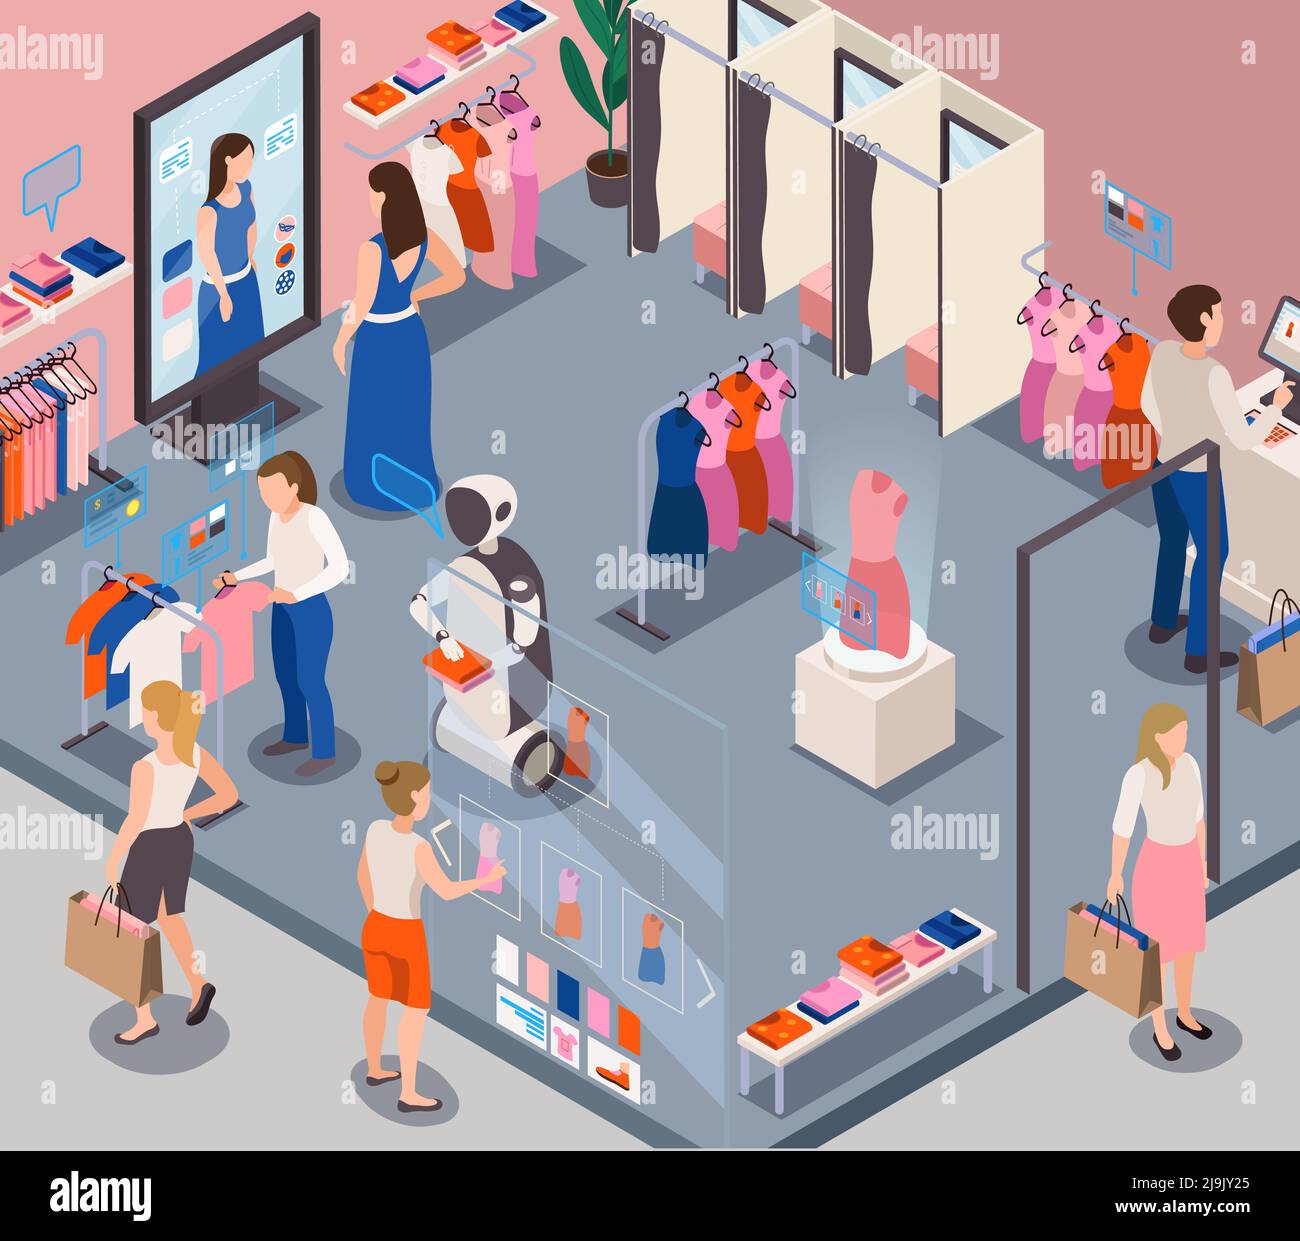 Moderni robot di servizio al dettaglio per negozi di moda che forniscono assistenza clienti personale suggerendo scelte di abbigliamento vettore di composizione isometrica illustrat Illustrazione Vettoriale